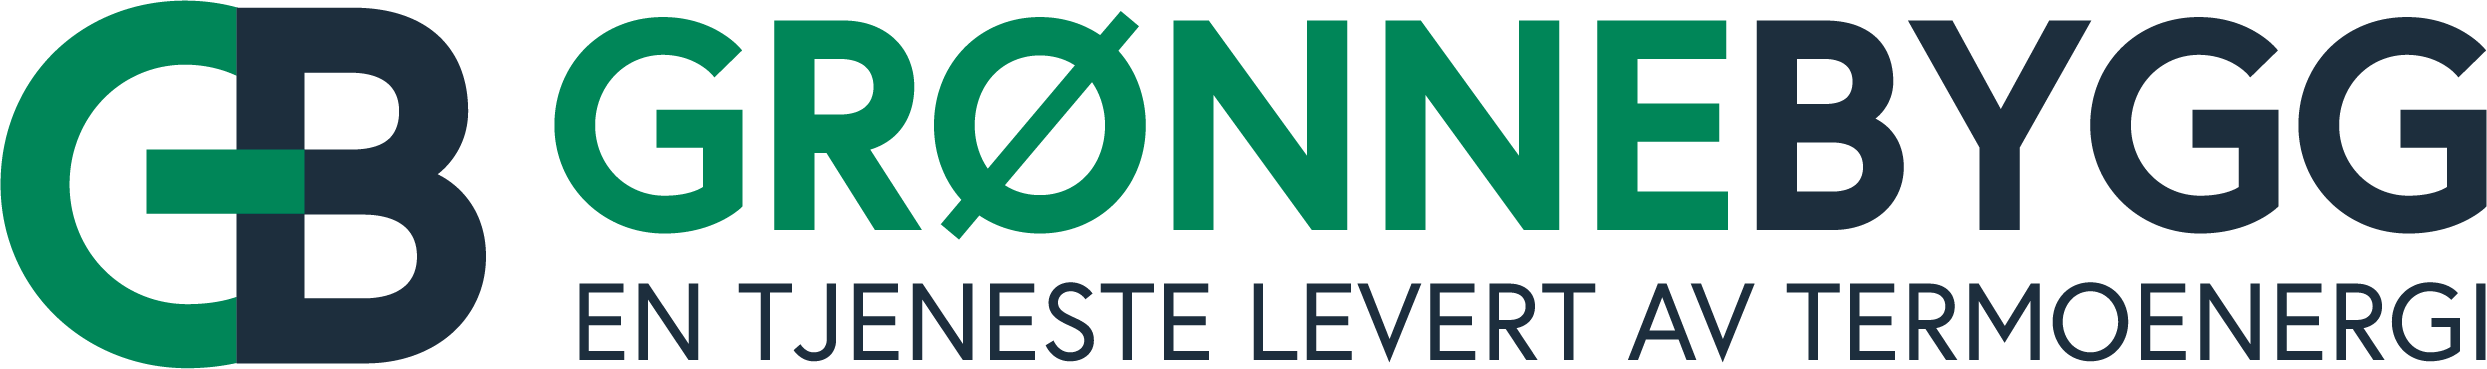 grønnebygg-logo